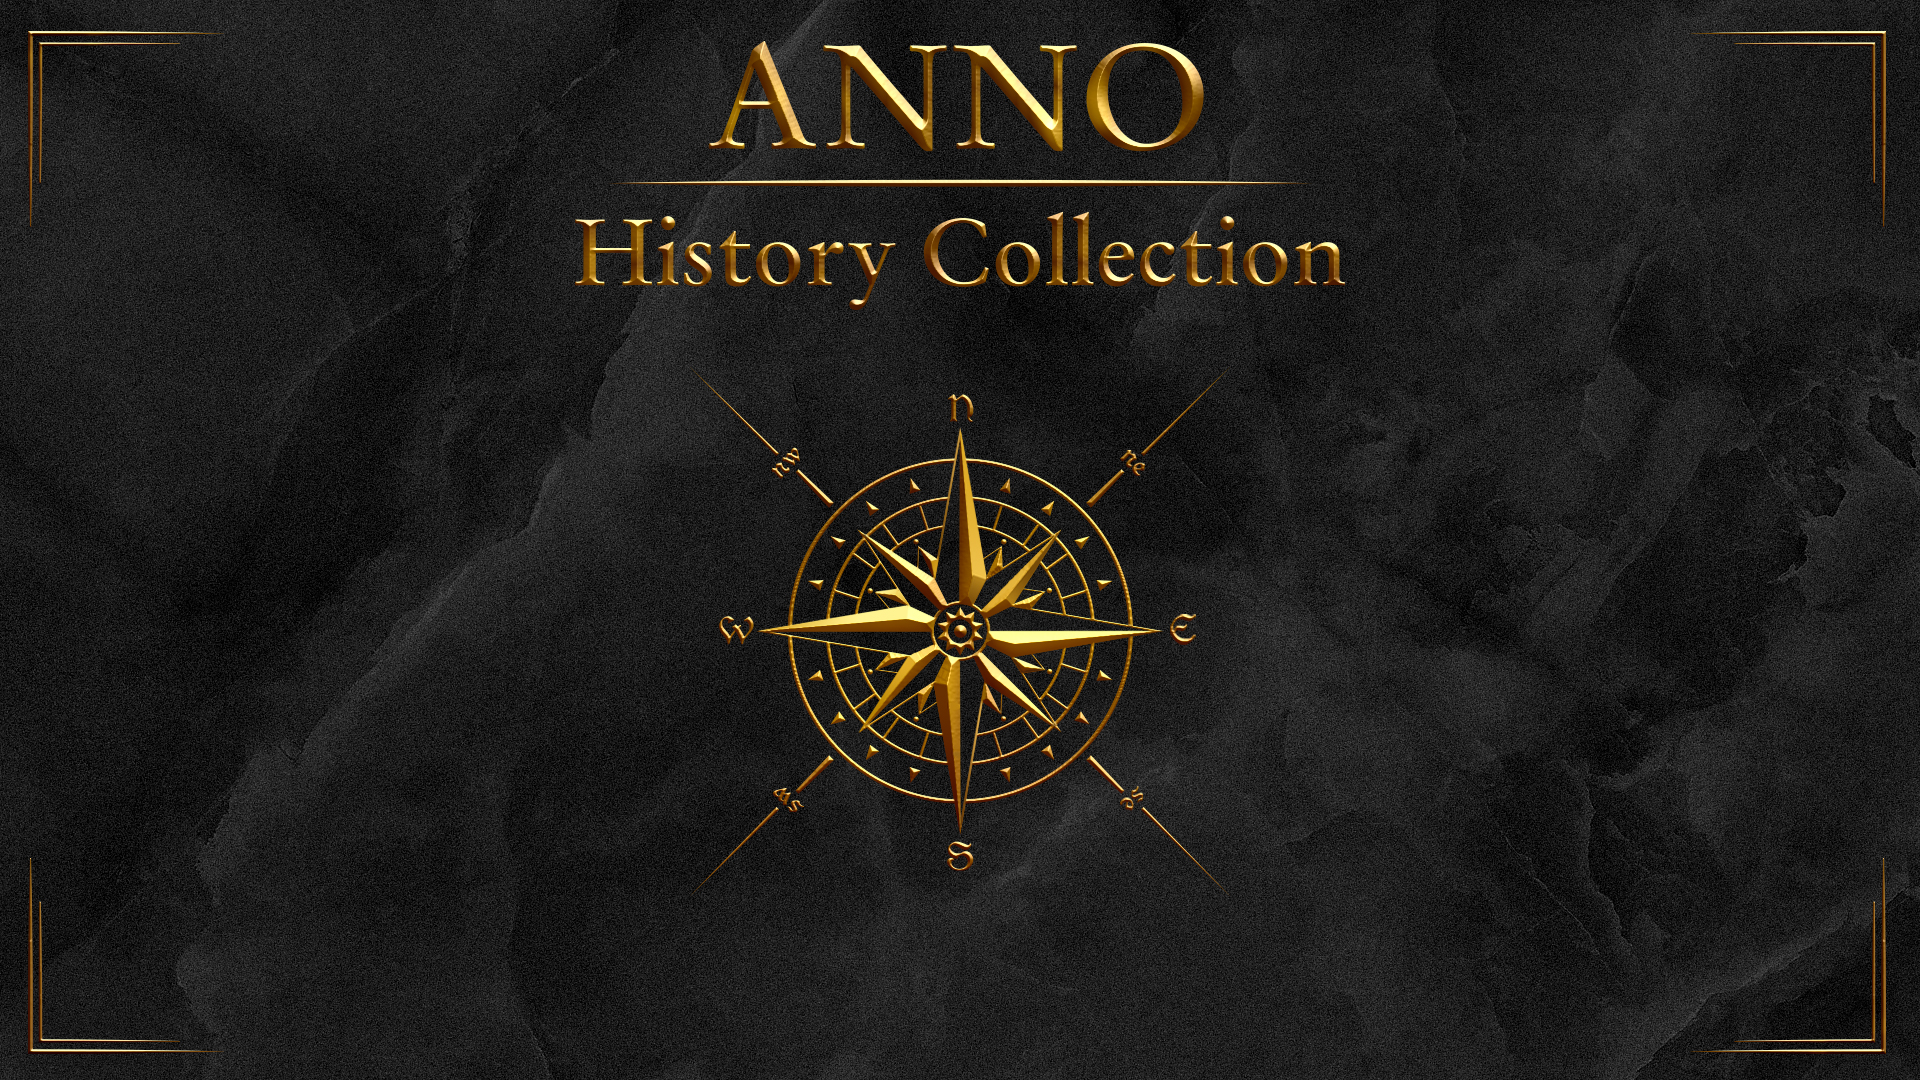 anno 1404 release date